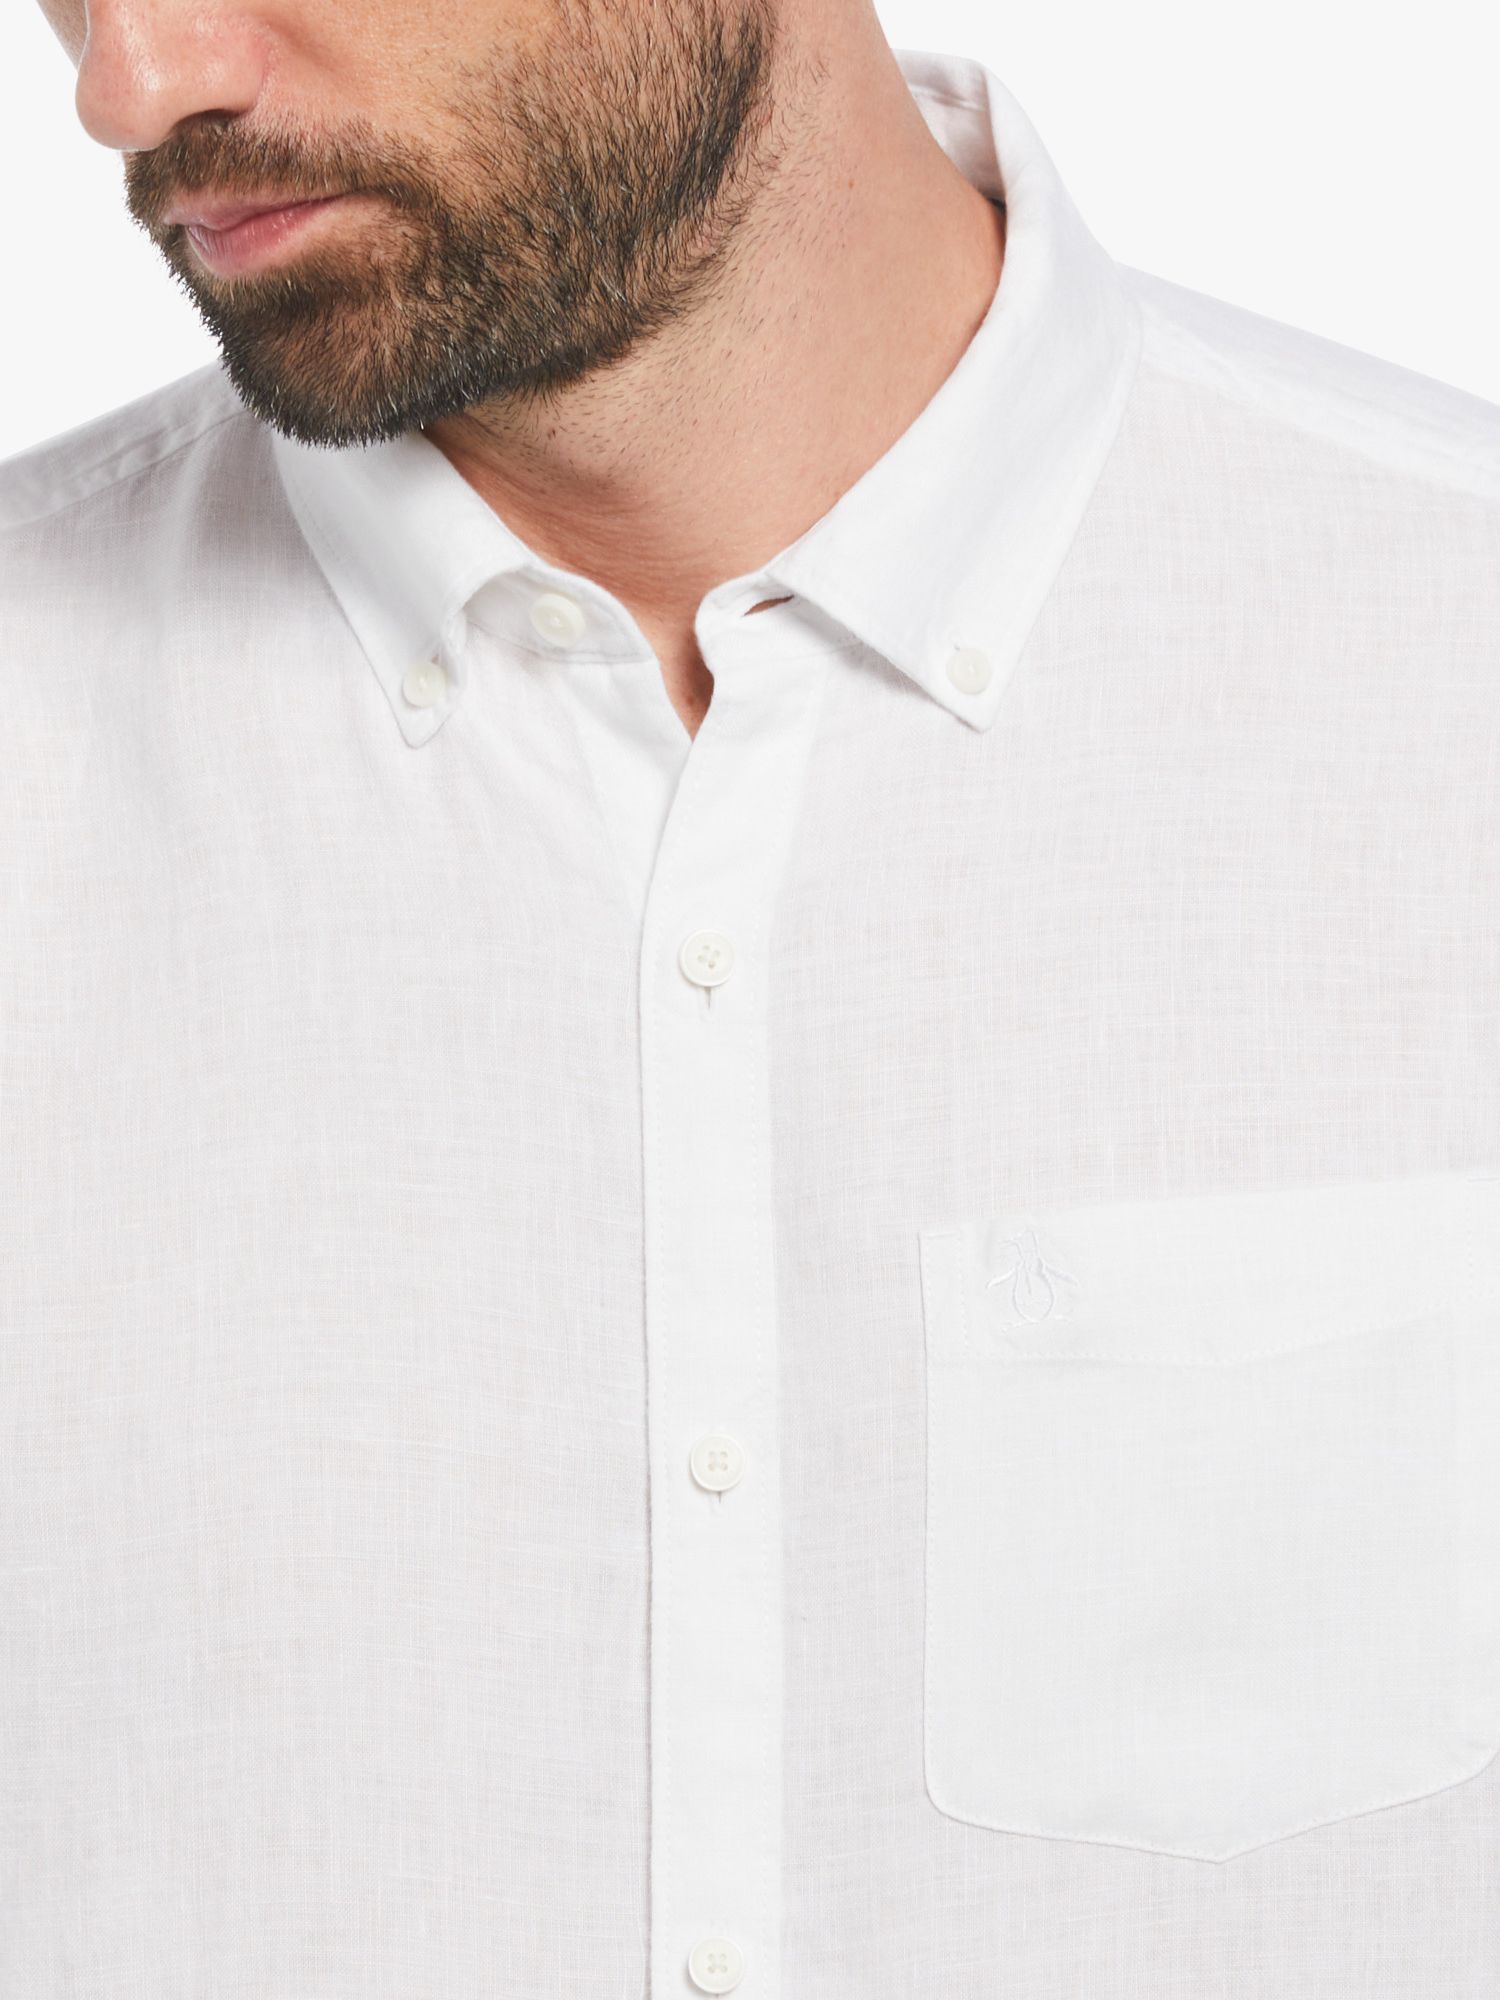 Original Penguin Long Sleeve Linen Shirt, White, L